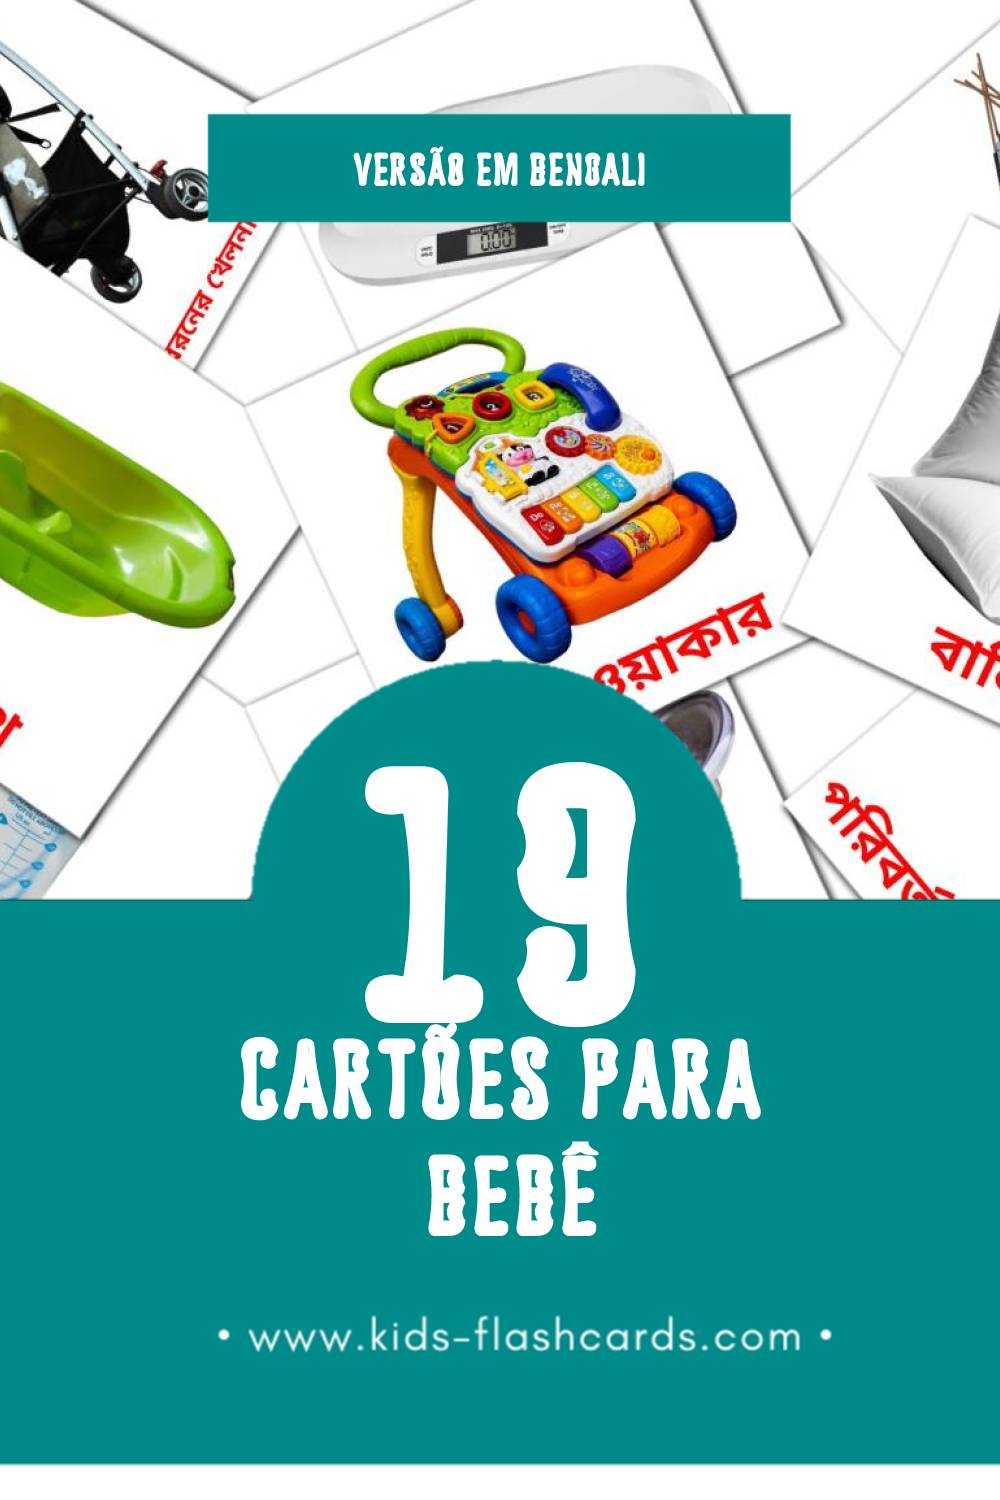 Flashcards de বেবী Visuais para Toddlers (19 cartões em Bengali)